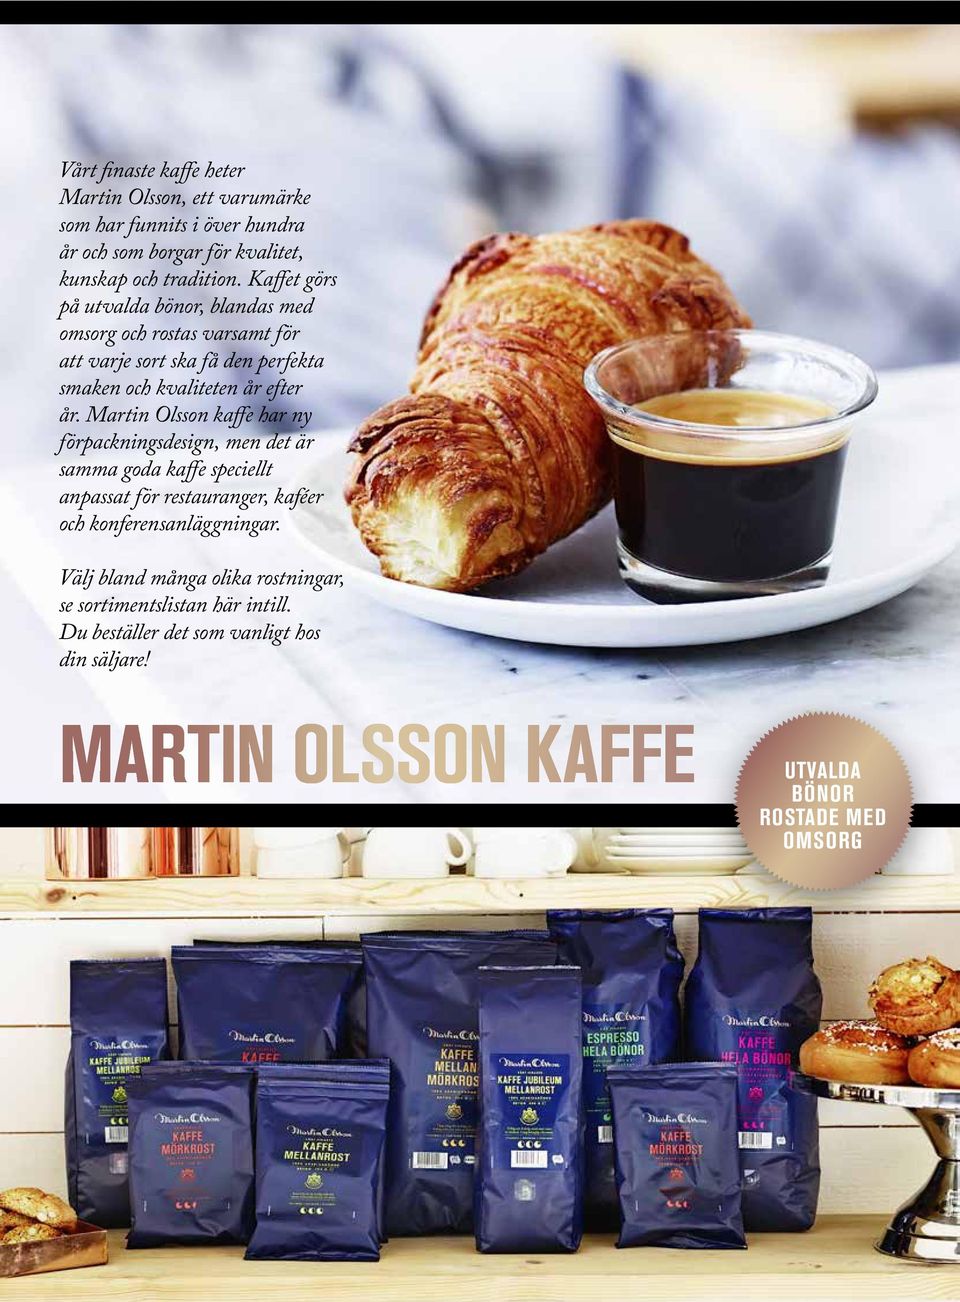 Martin Olsson kaffe har ny förpackningsdesign, men det är samma goda kaffe speciellt anpassat för restauranger, kaféer och konferensanläggningar.